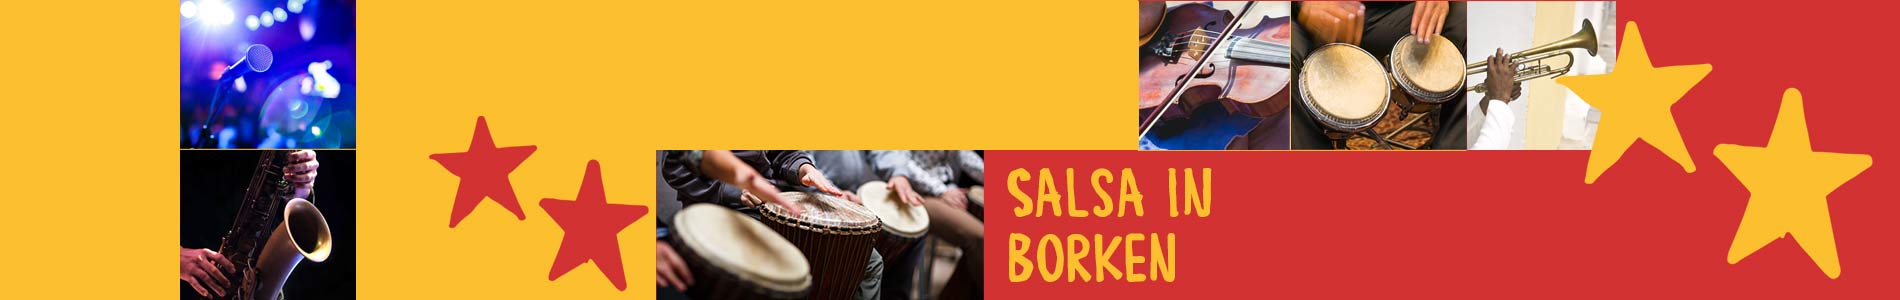 Salsa in Borken – Salsa lernen und tanzen, Tanzkurse, Partys, Veranstaltungen